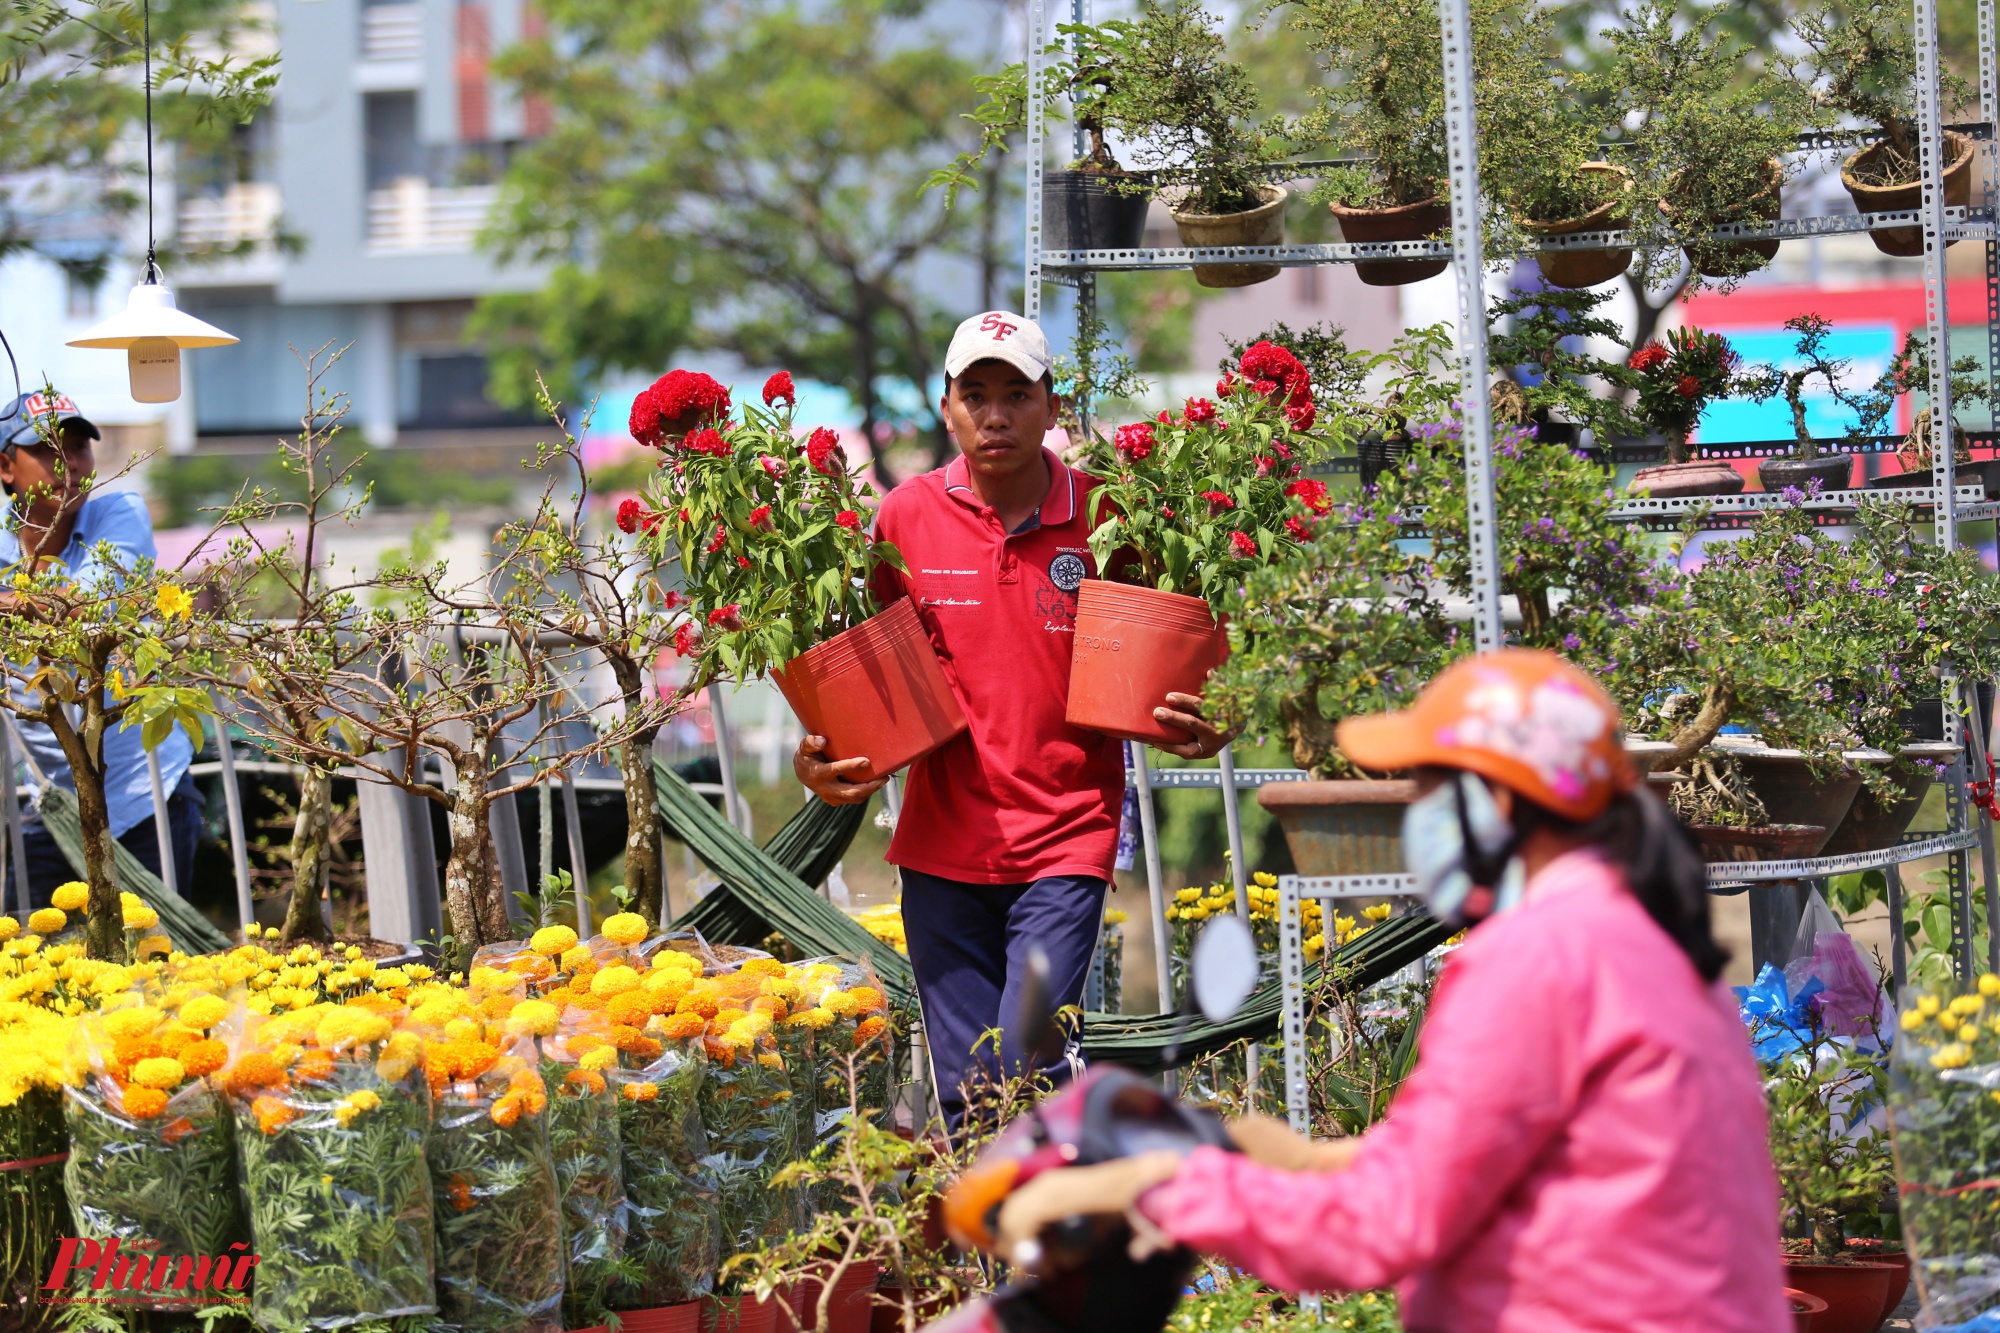 Bến Bình Đông là nơi trao đổi hàng hóa giữa Sài Gòn với các tỉnh vùng Đồng bằng sông Cửu Long. Khoảng từ 23 tháng Chạp hàng năm, nơi đây lại nhộn nhịp ghe xuồng chở đầy ắp hoa kiểng từ miền Tây về bán cho người dân thành phố chơi xuân.